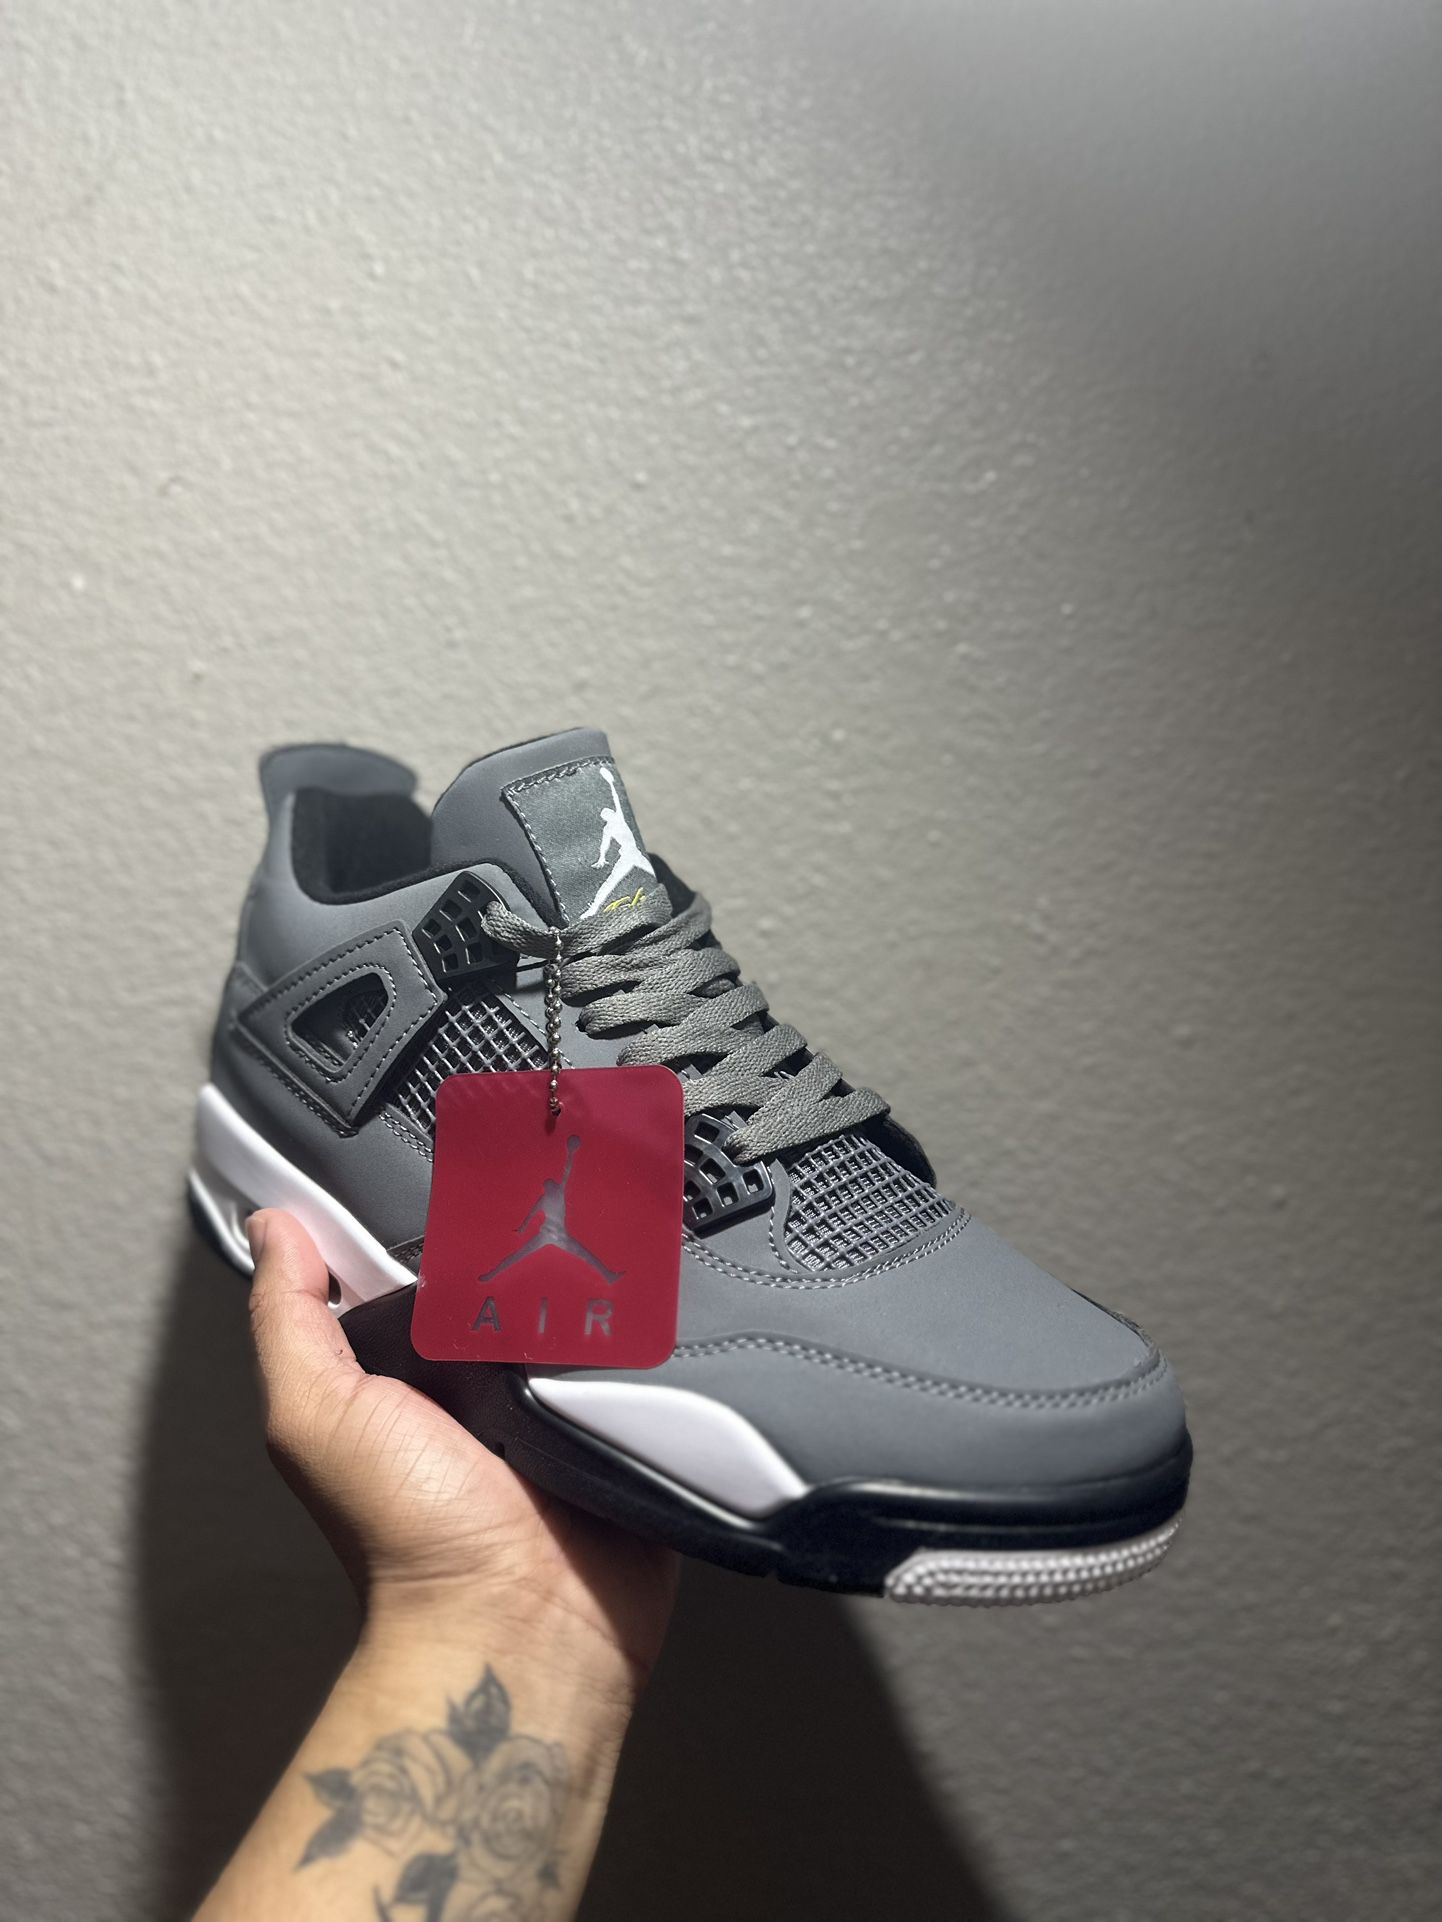 Air Jordan Cool Grey 4’s